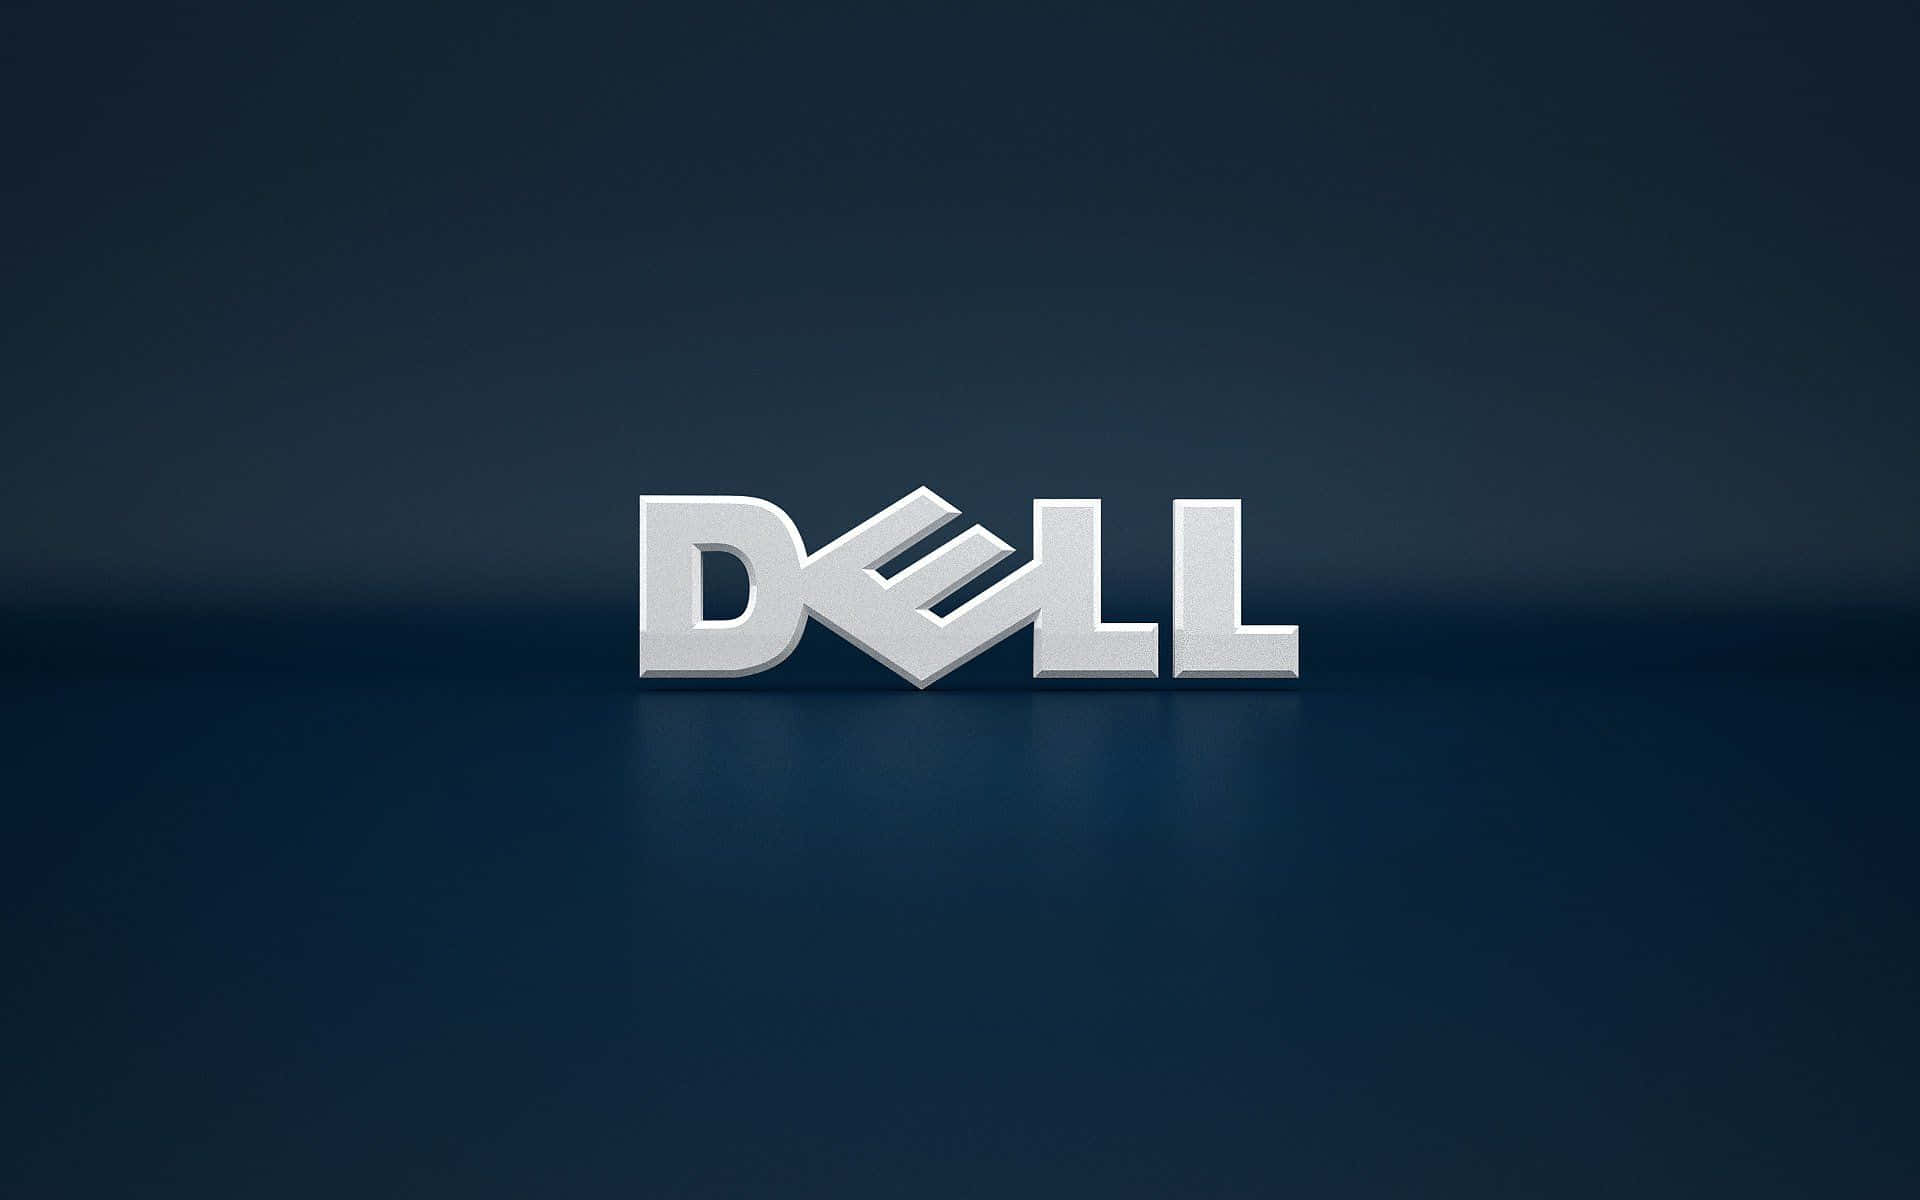 Personalizzail Tuo Dell Per Una Performance Ottimale